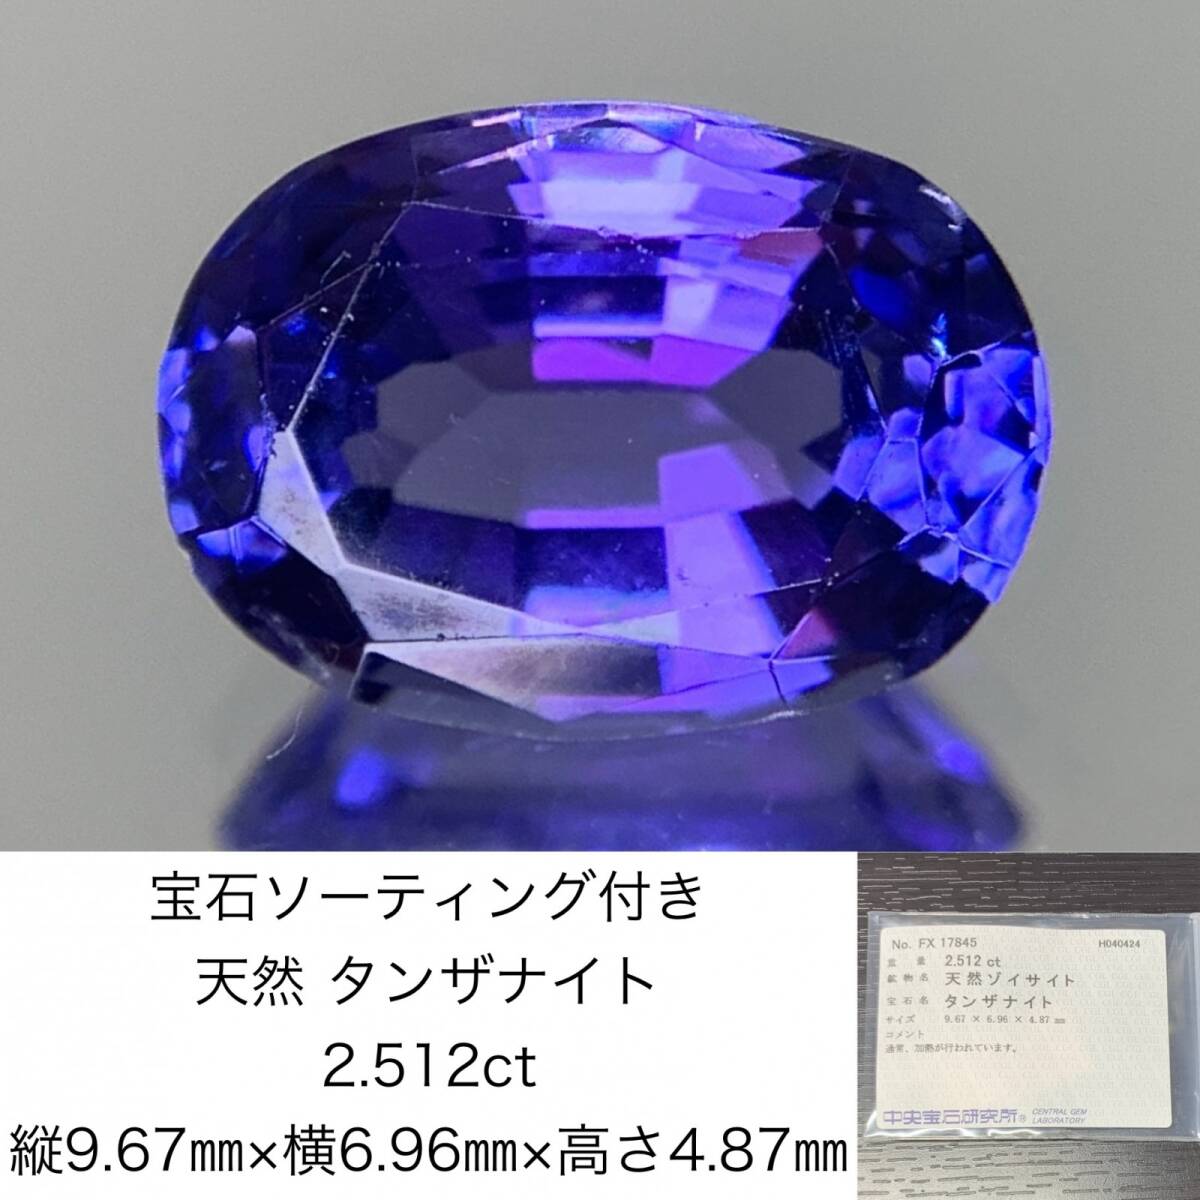 1 иен танзанит 2.512ct драгоценнный камень so-ting имеется длина 9.67× ширина 6.96× высота 4.87 разрозненный ( камни не в изделии ) 1518Y